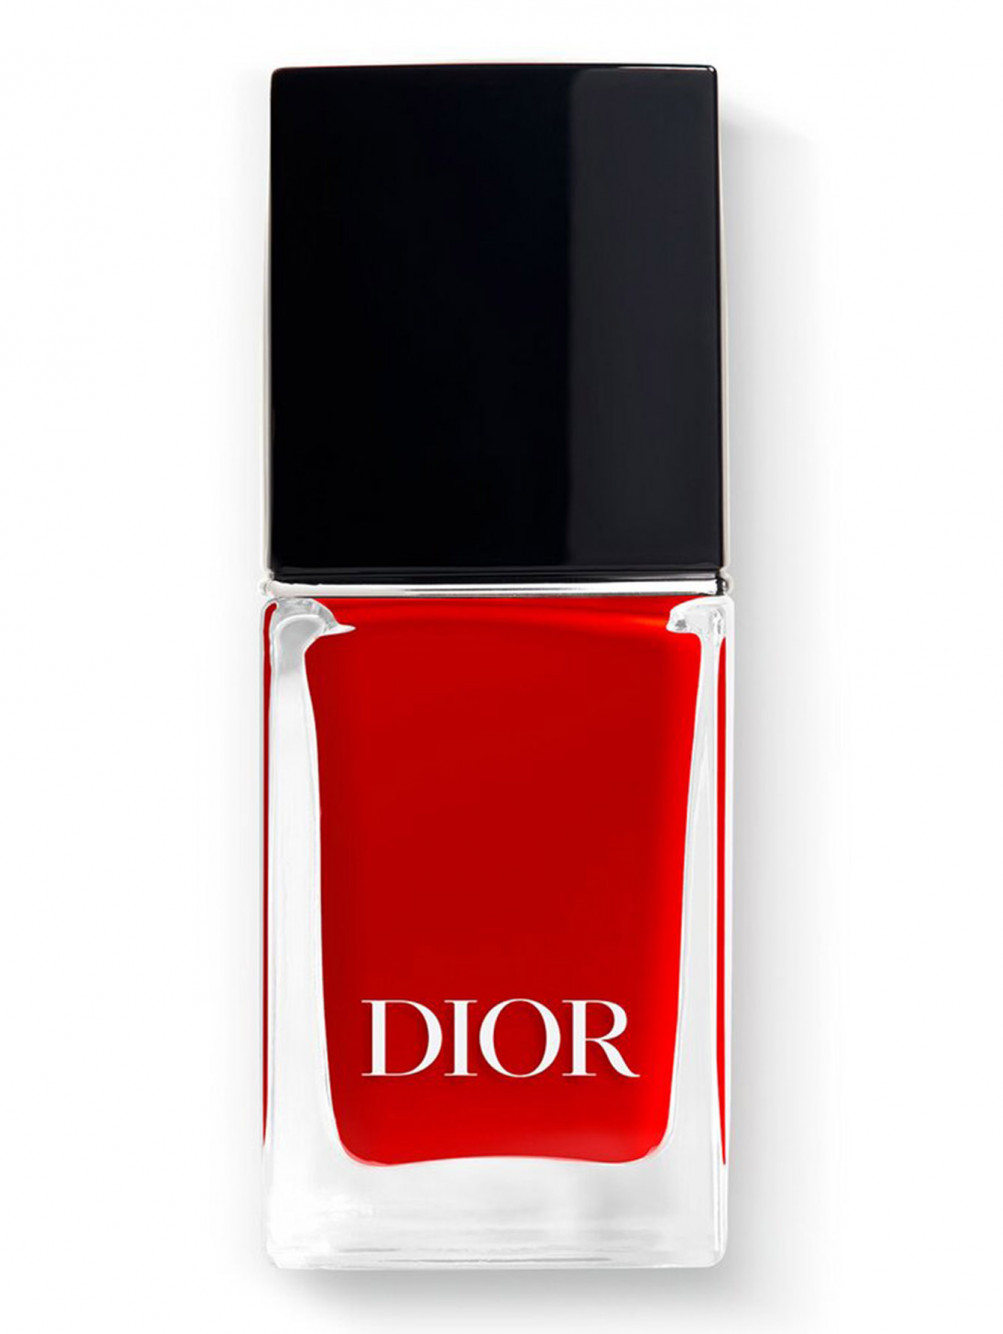 Лак для ногтей с эффектом гелевого покрытия Dior Vernis, 999, 10 мл - Общий вид